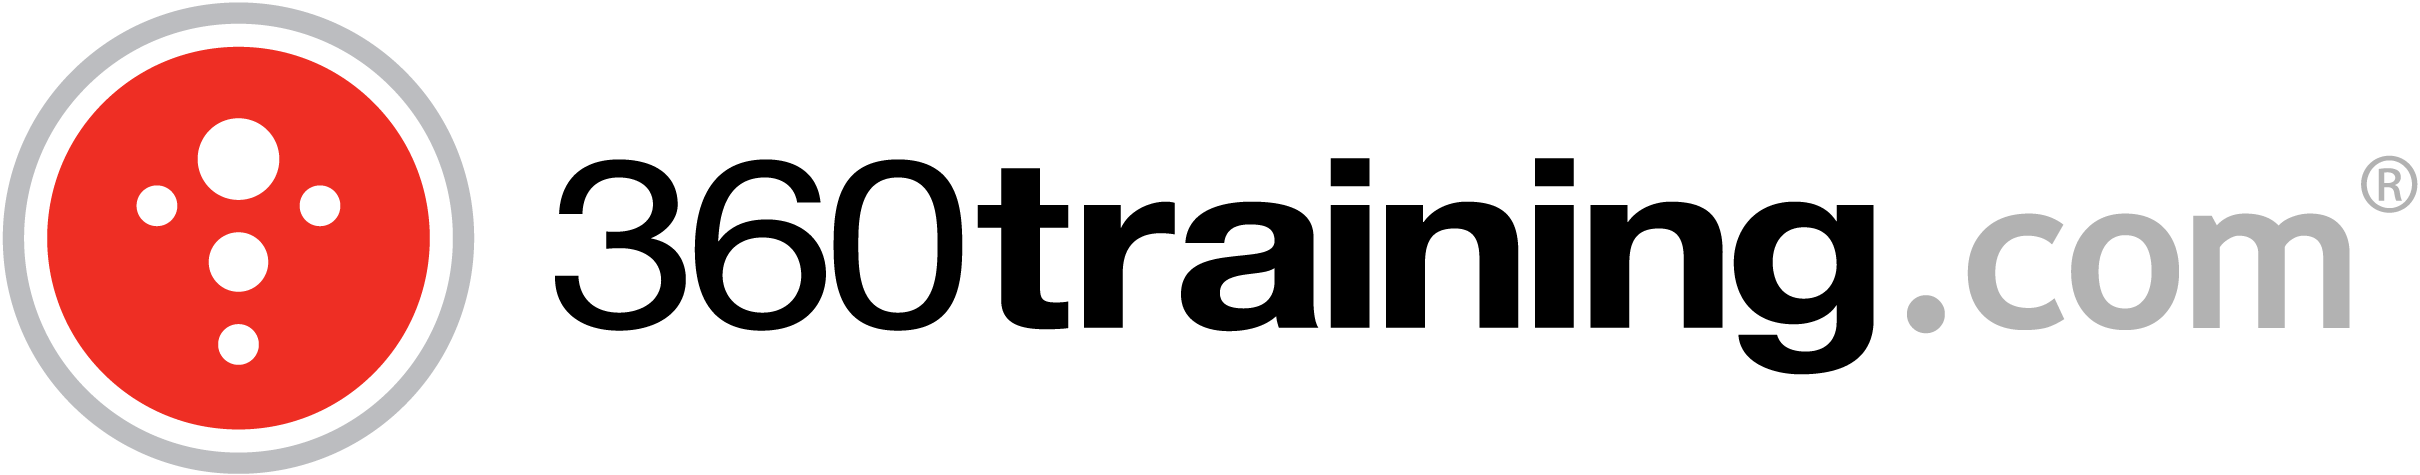 360training.com logo